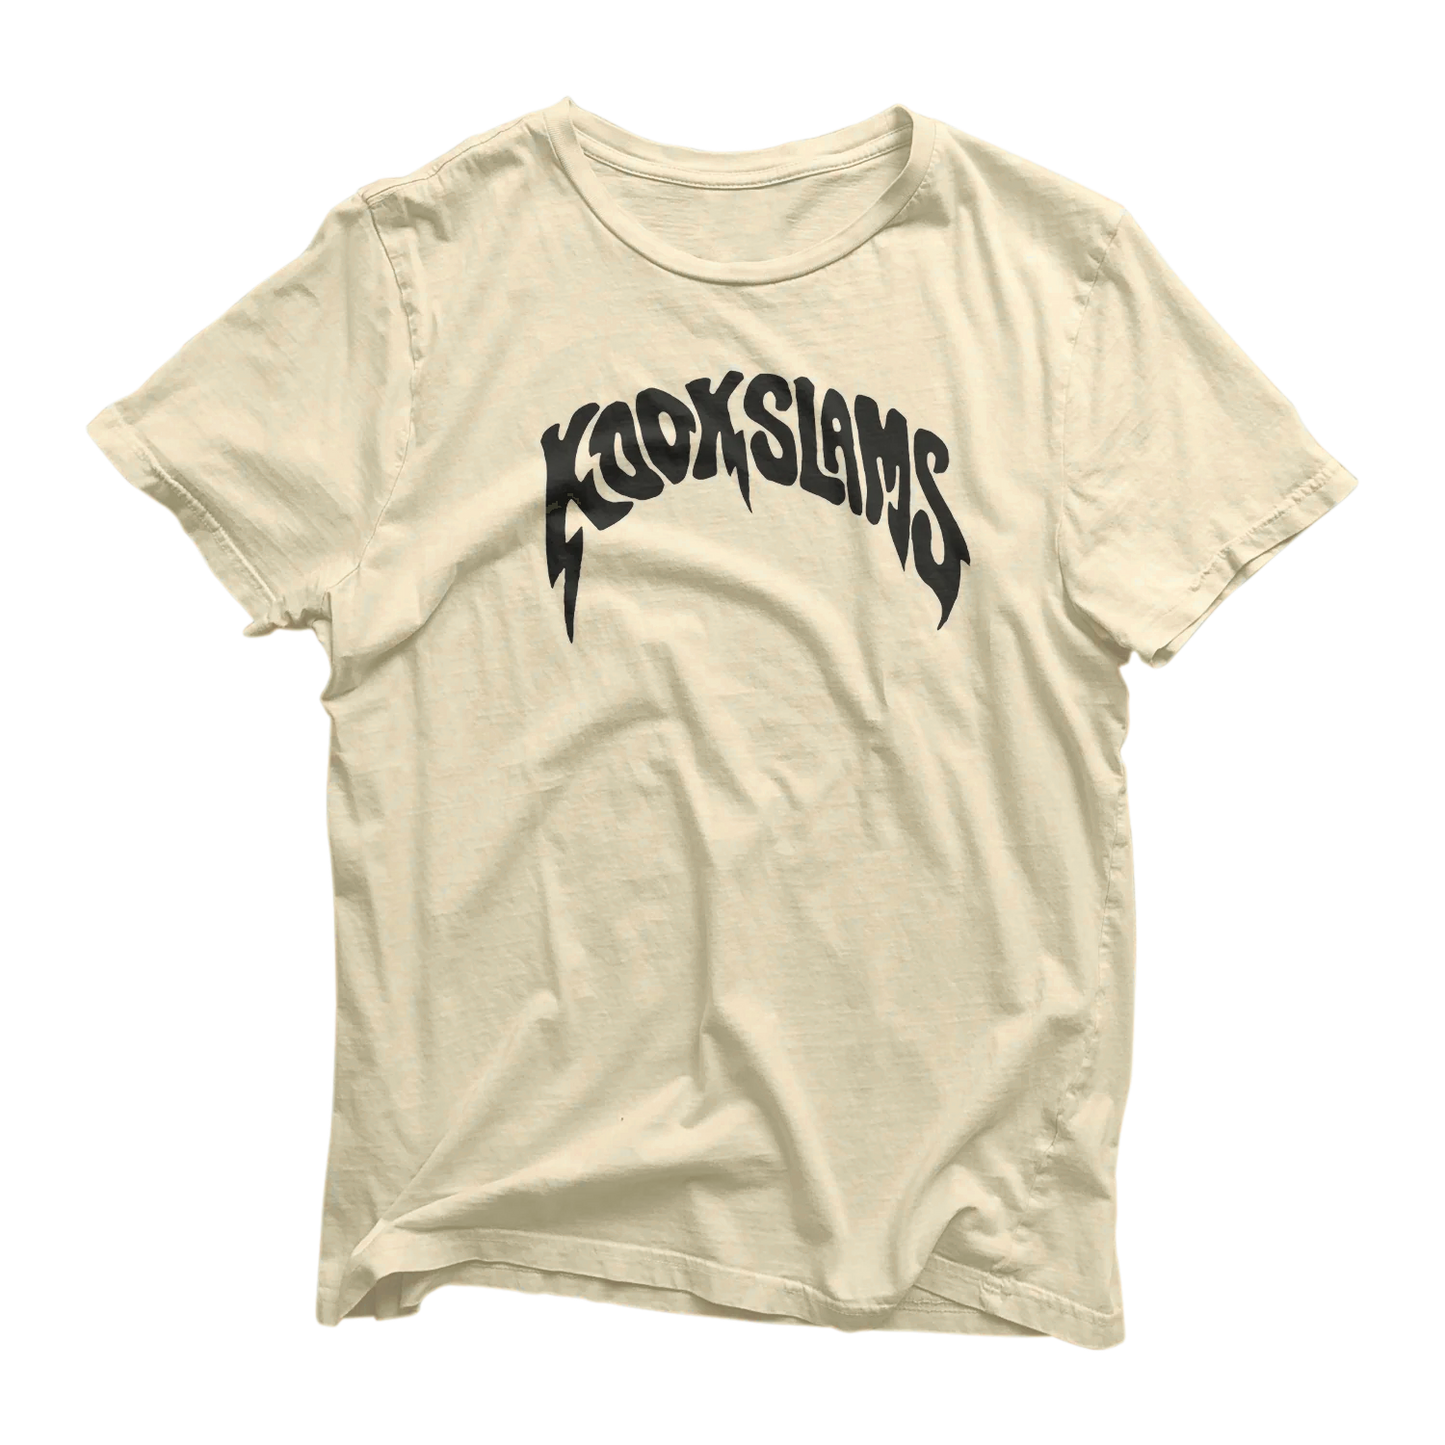 Kookslams is Metal T Shirt